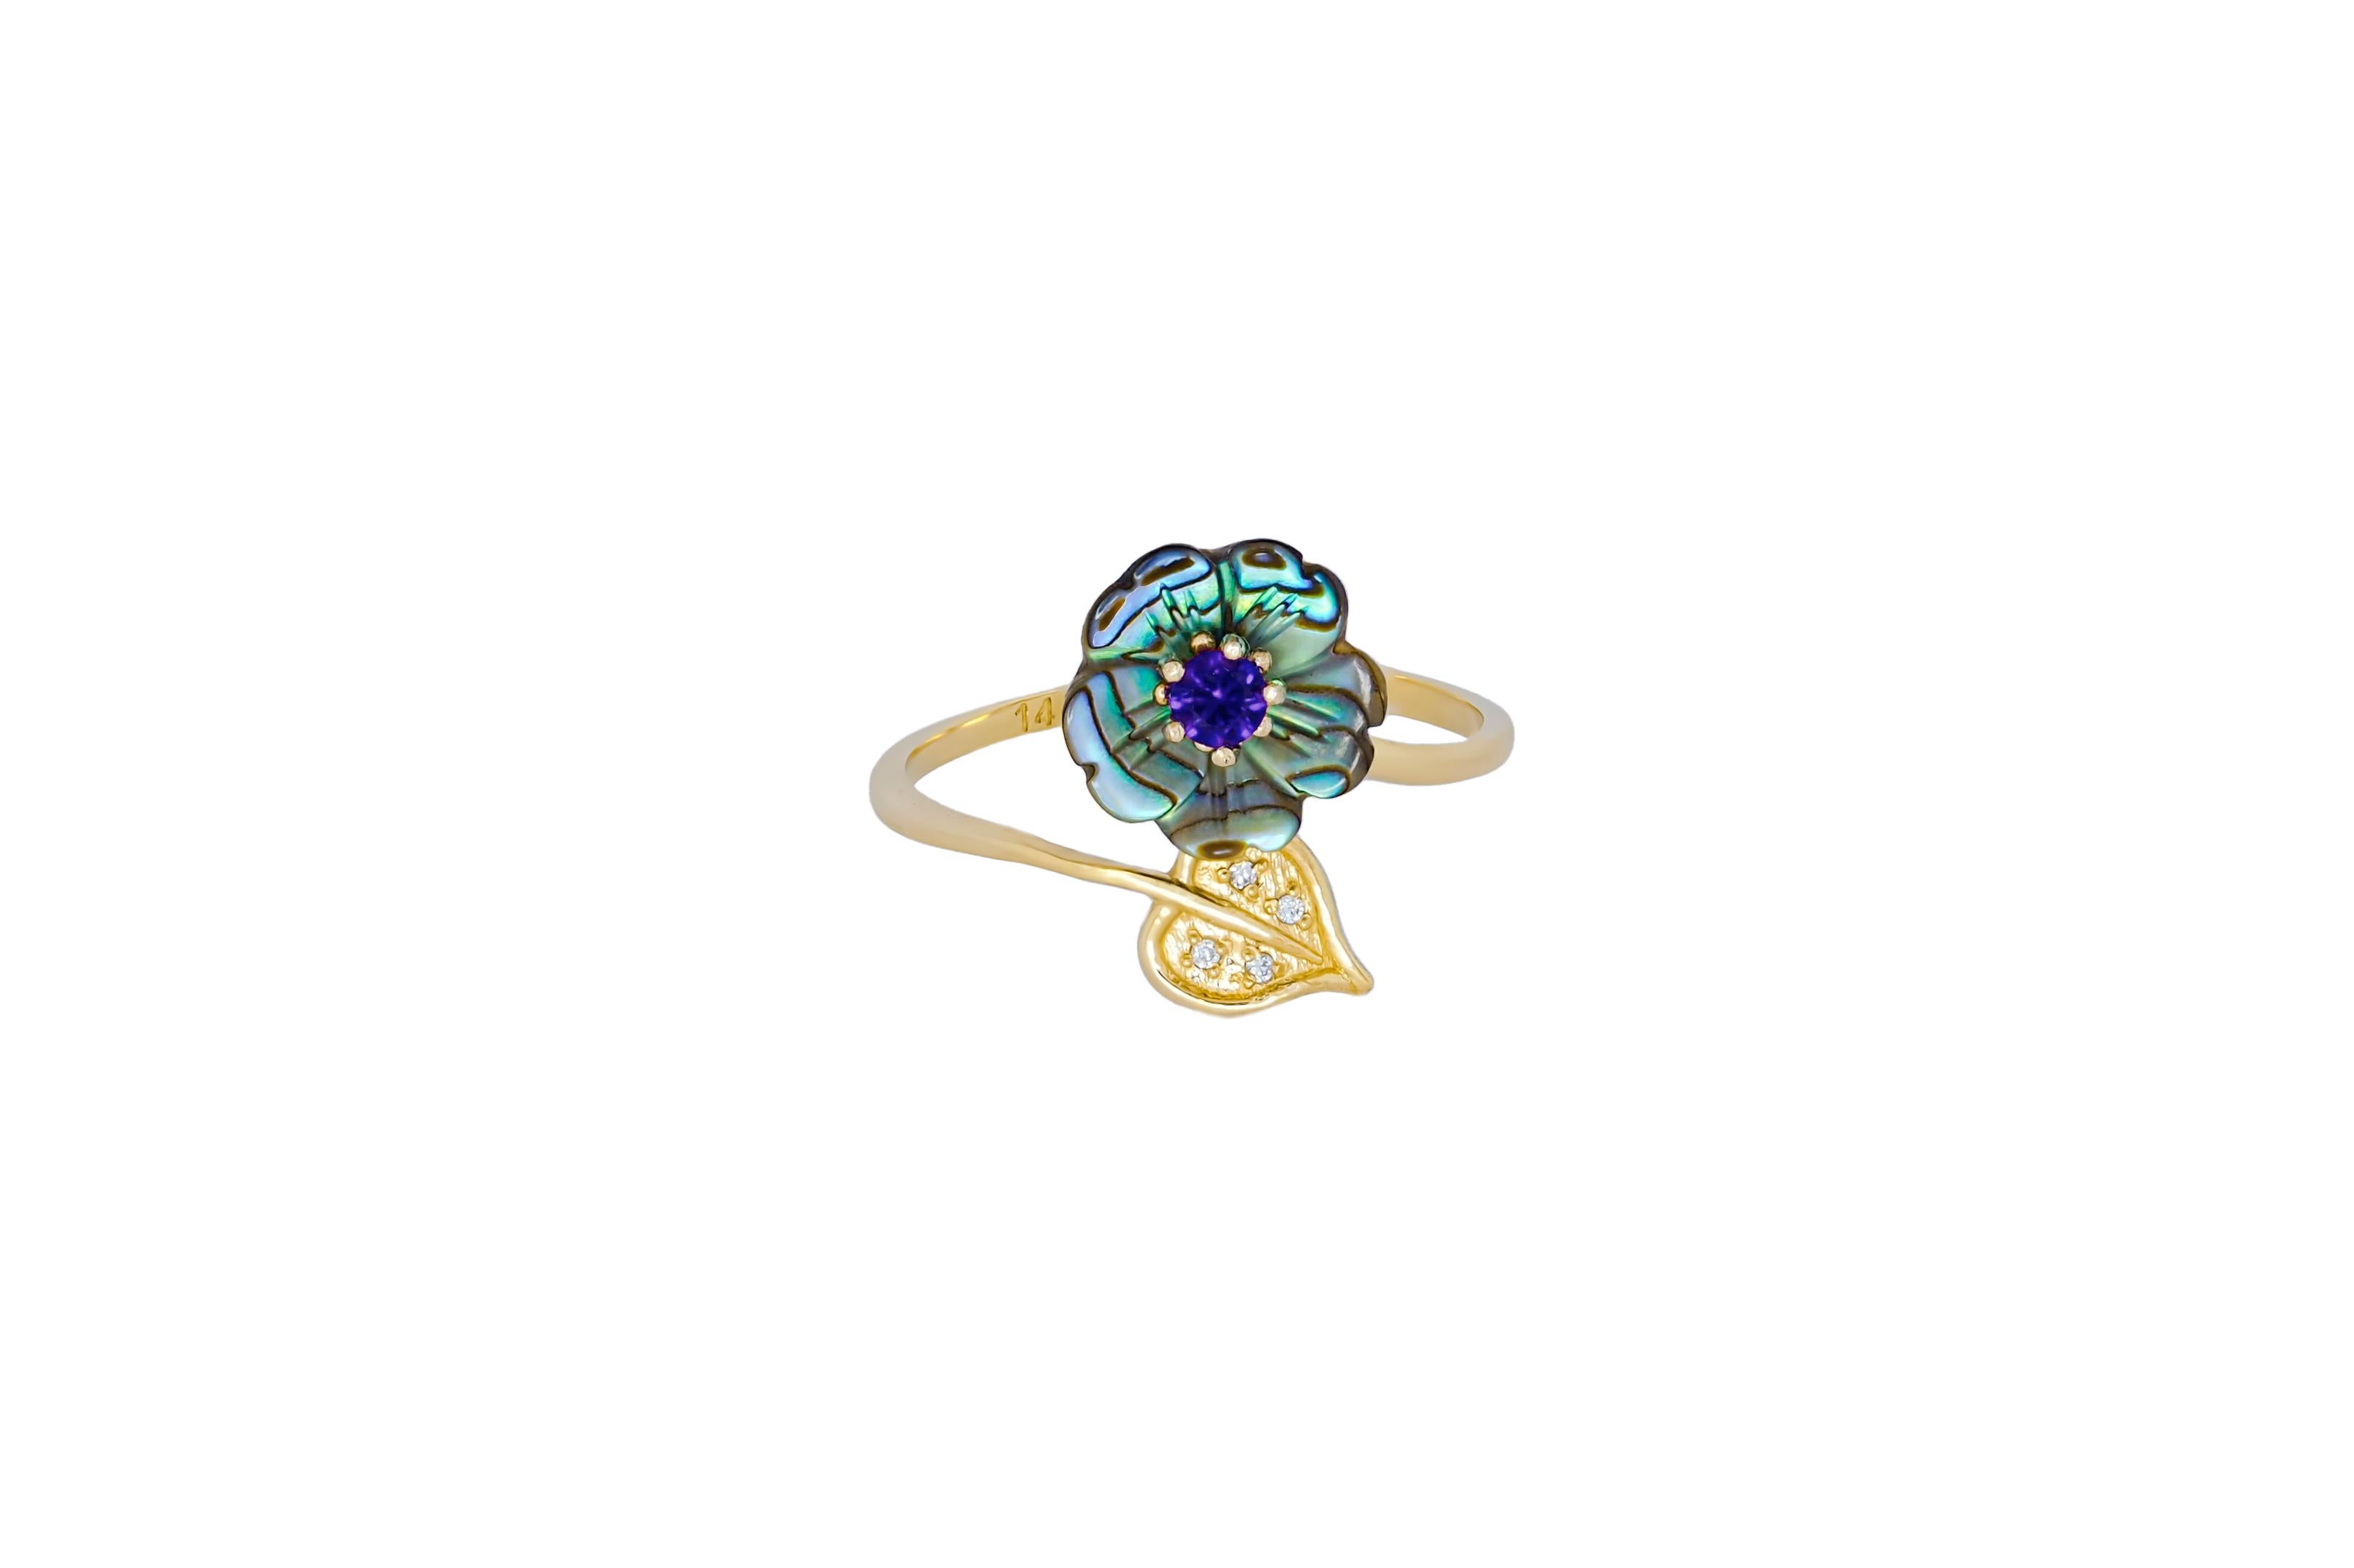 For Sale:  Royal blue gemstone 14k  gold ring.  3